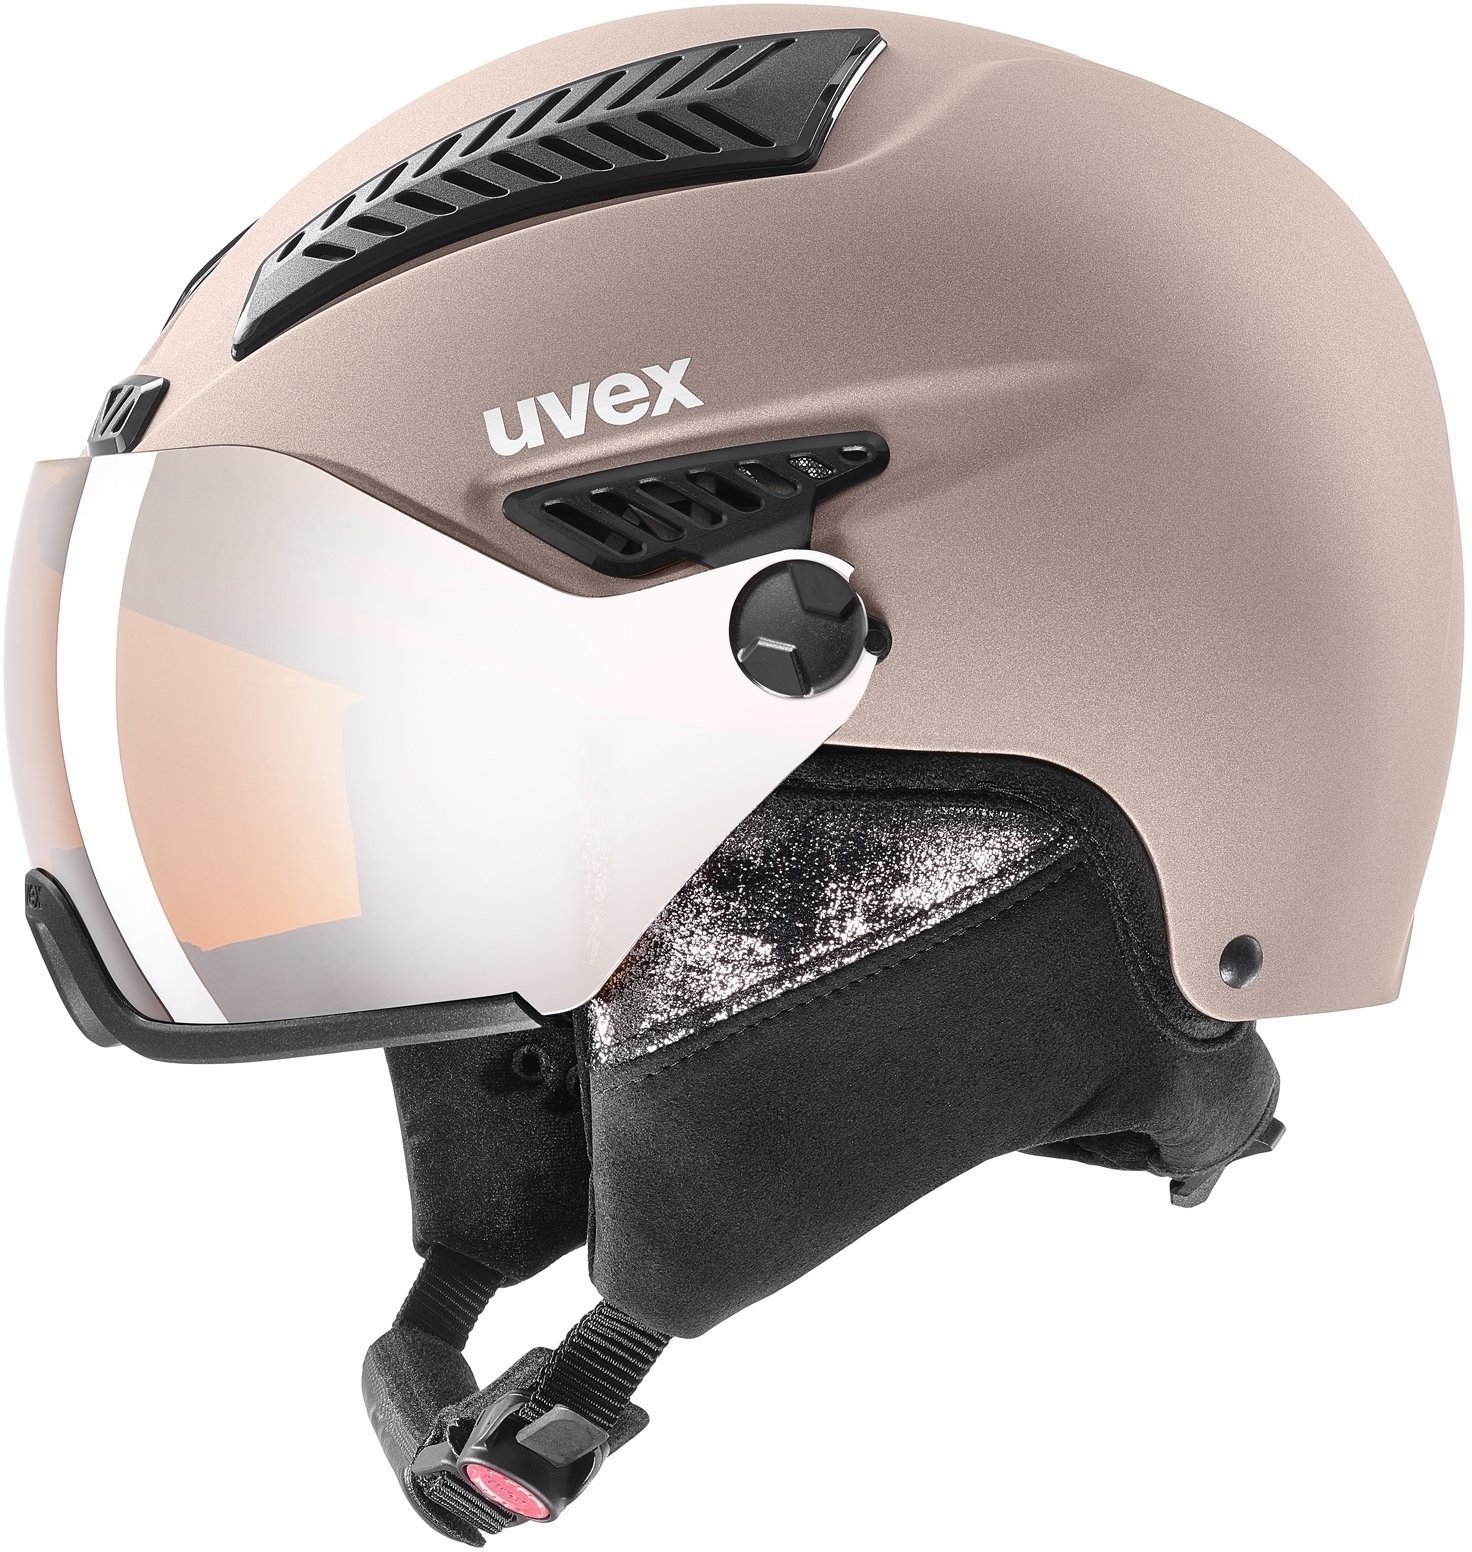 Ski Helmet UVEX Hlmt 600 Visor Rose Mat 53-55 cm Ski Helmet